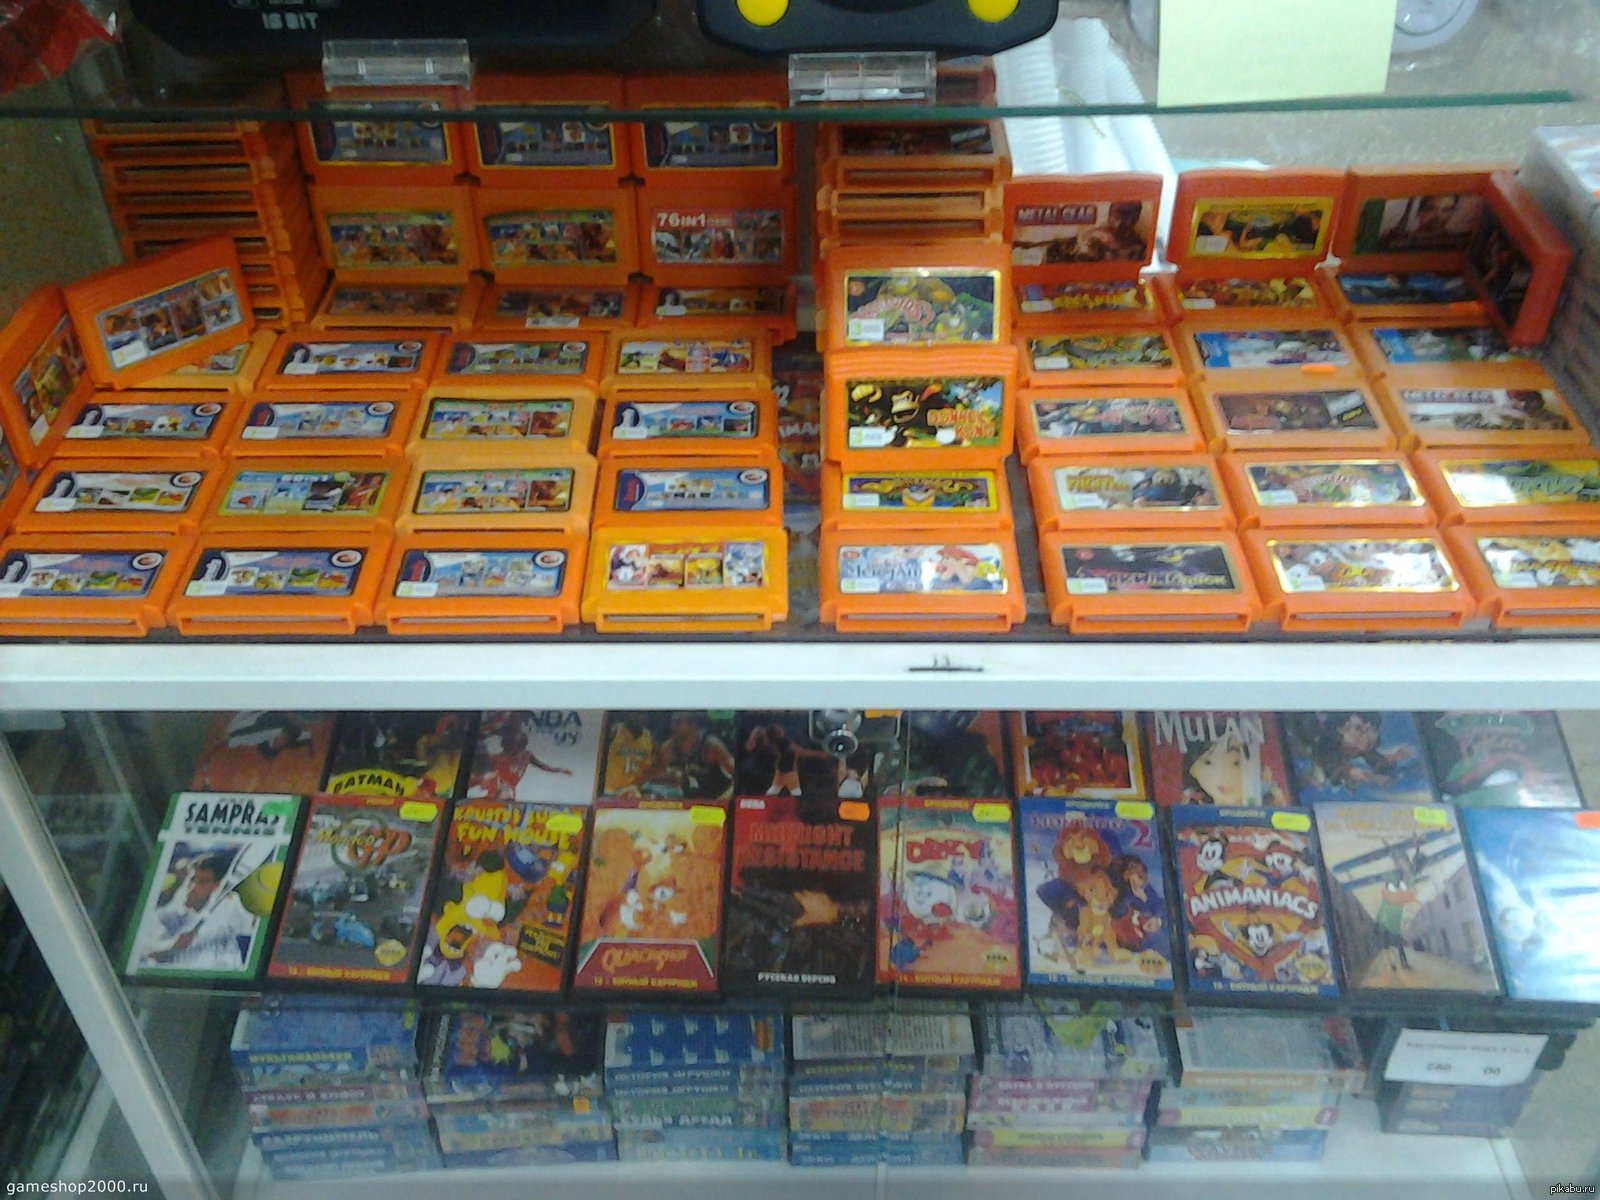 Gameshop2000. Ларек с кассетами. Ларьки с кассетами в 90-е. Ларек с пиратскими дисками. Пиратские диски 90х.